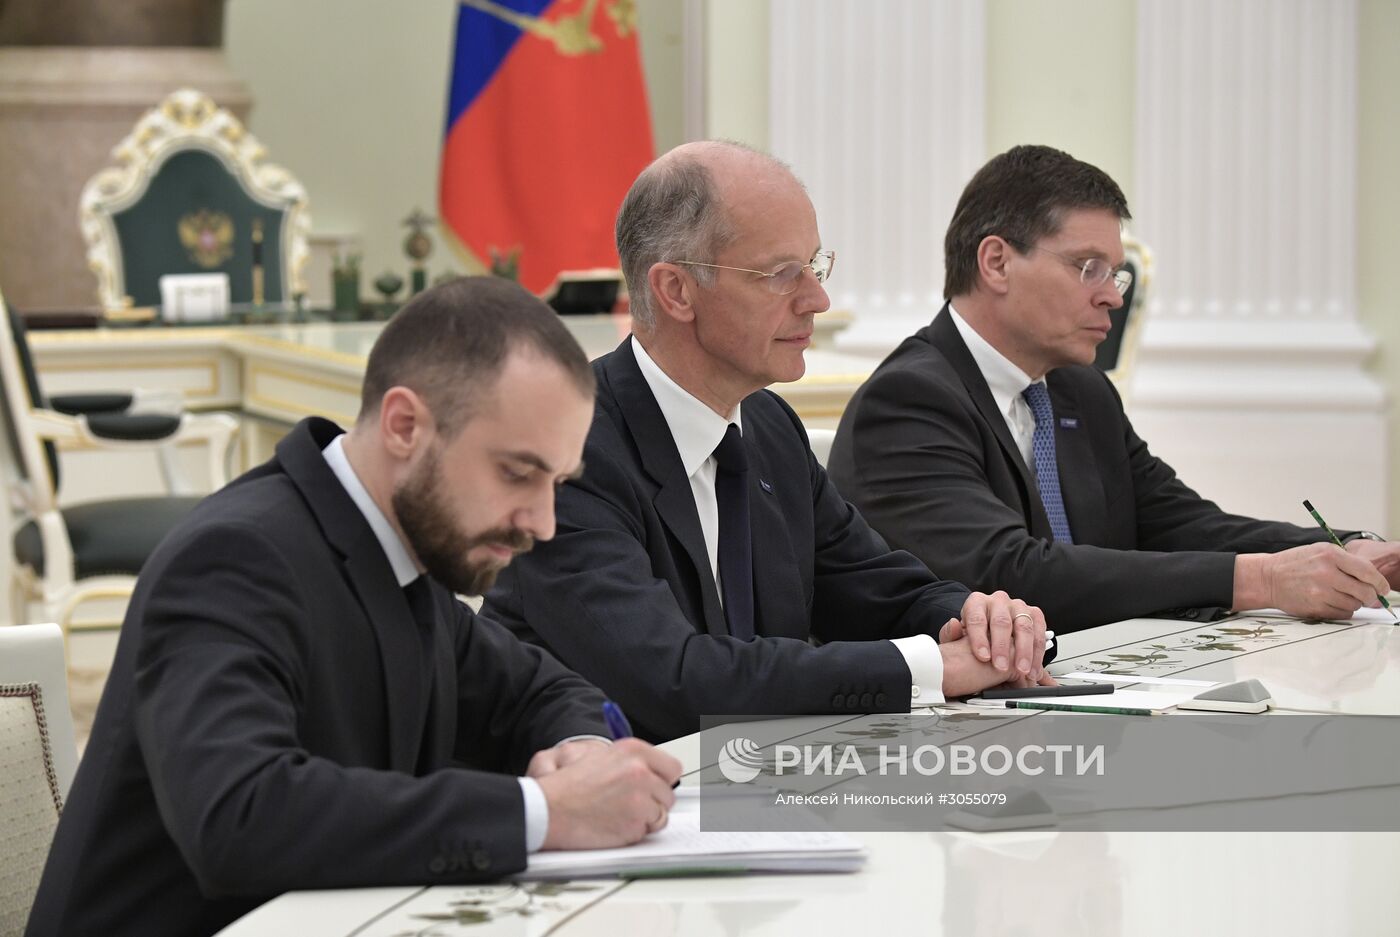 Встреча президента РФ В. Путина с главой концерна BASF К. Боком